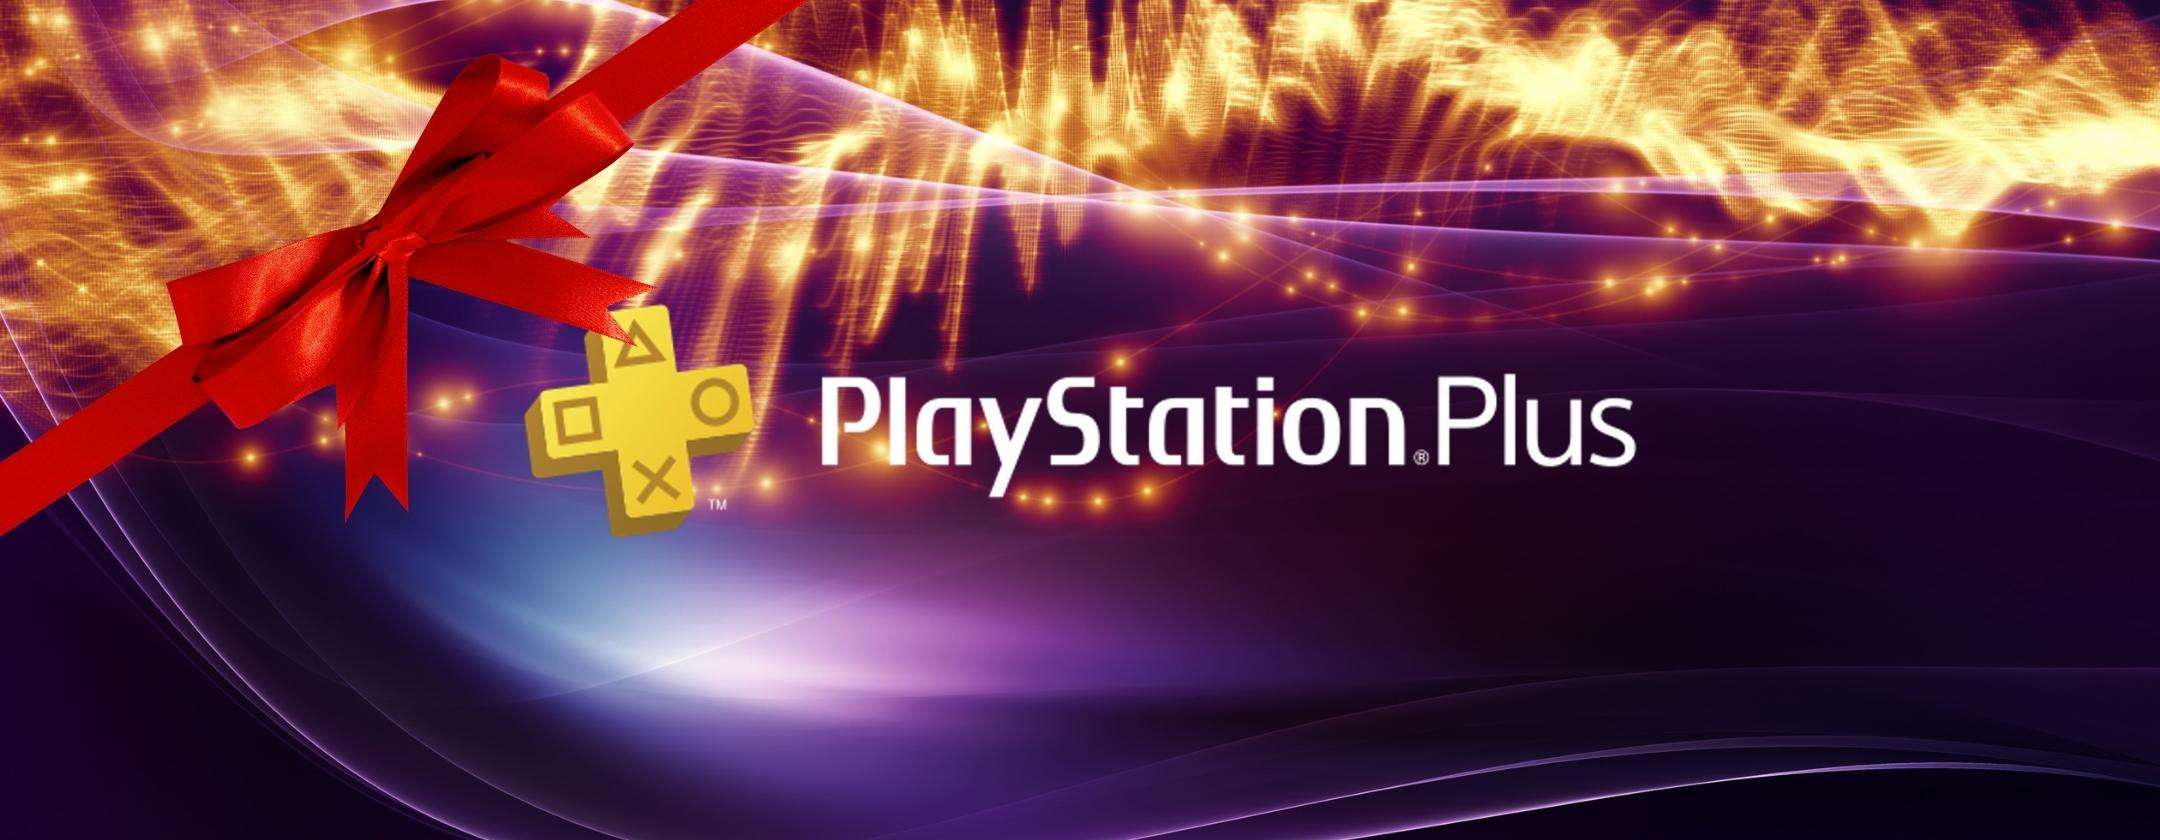 PlayStation Plus ha annunciato un bonus in regalo per dicembre